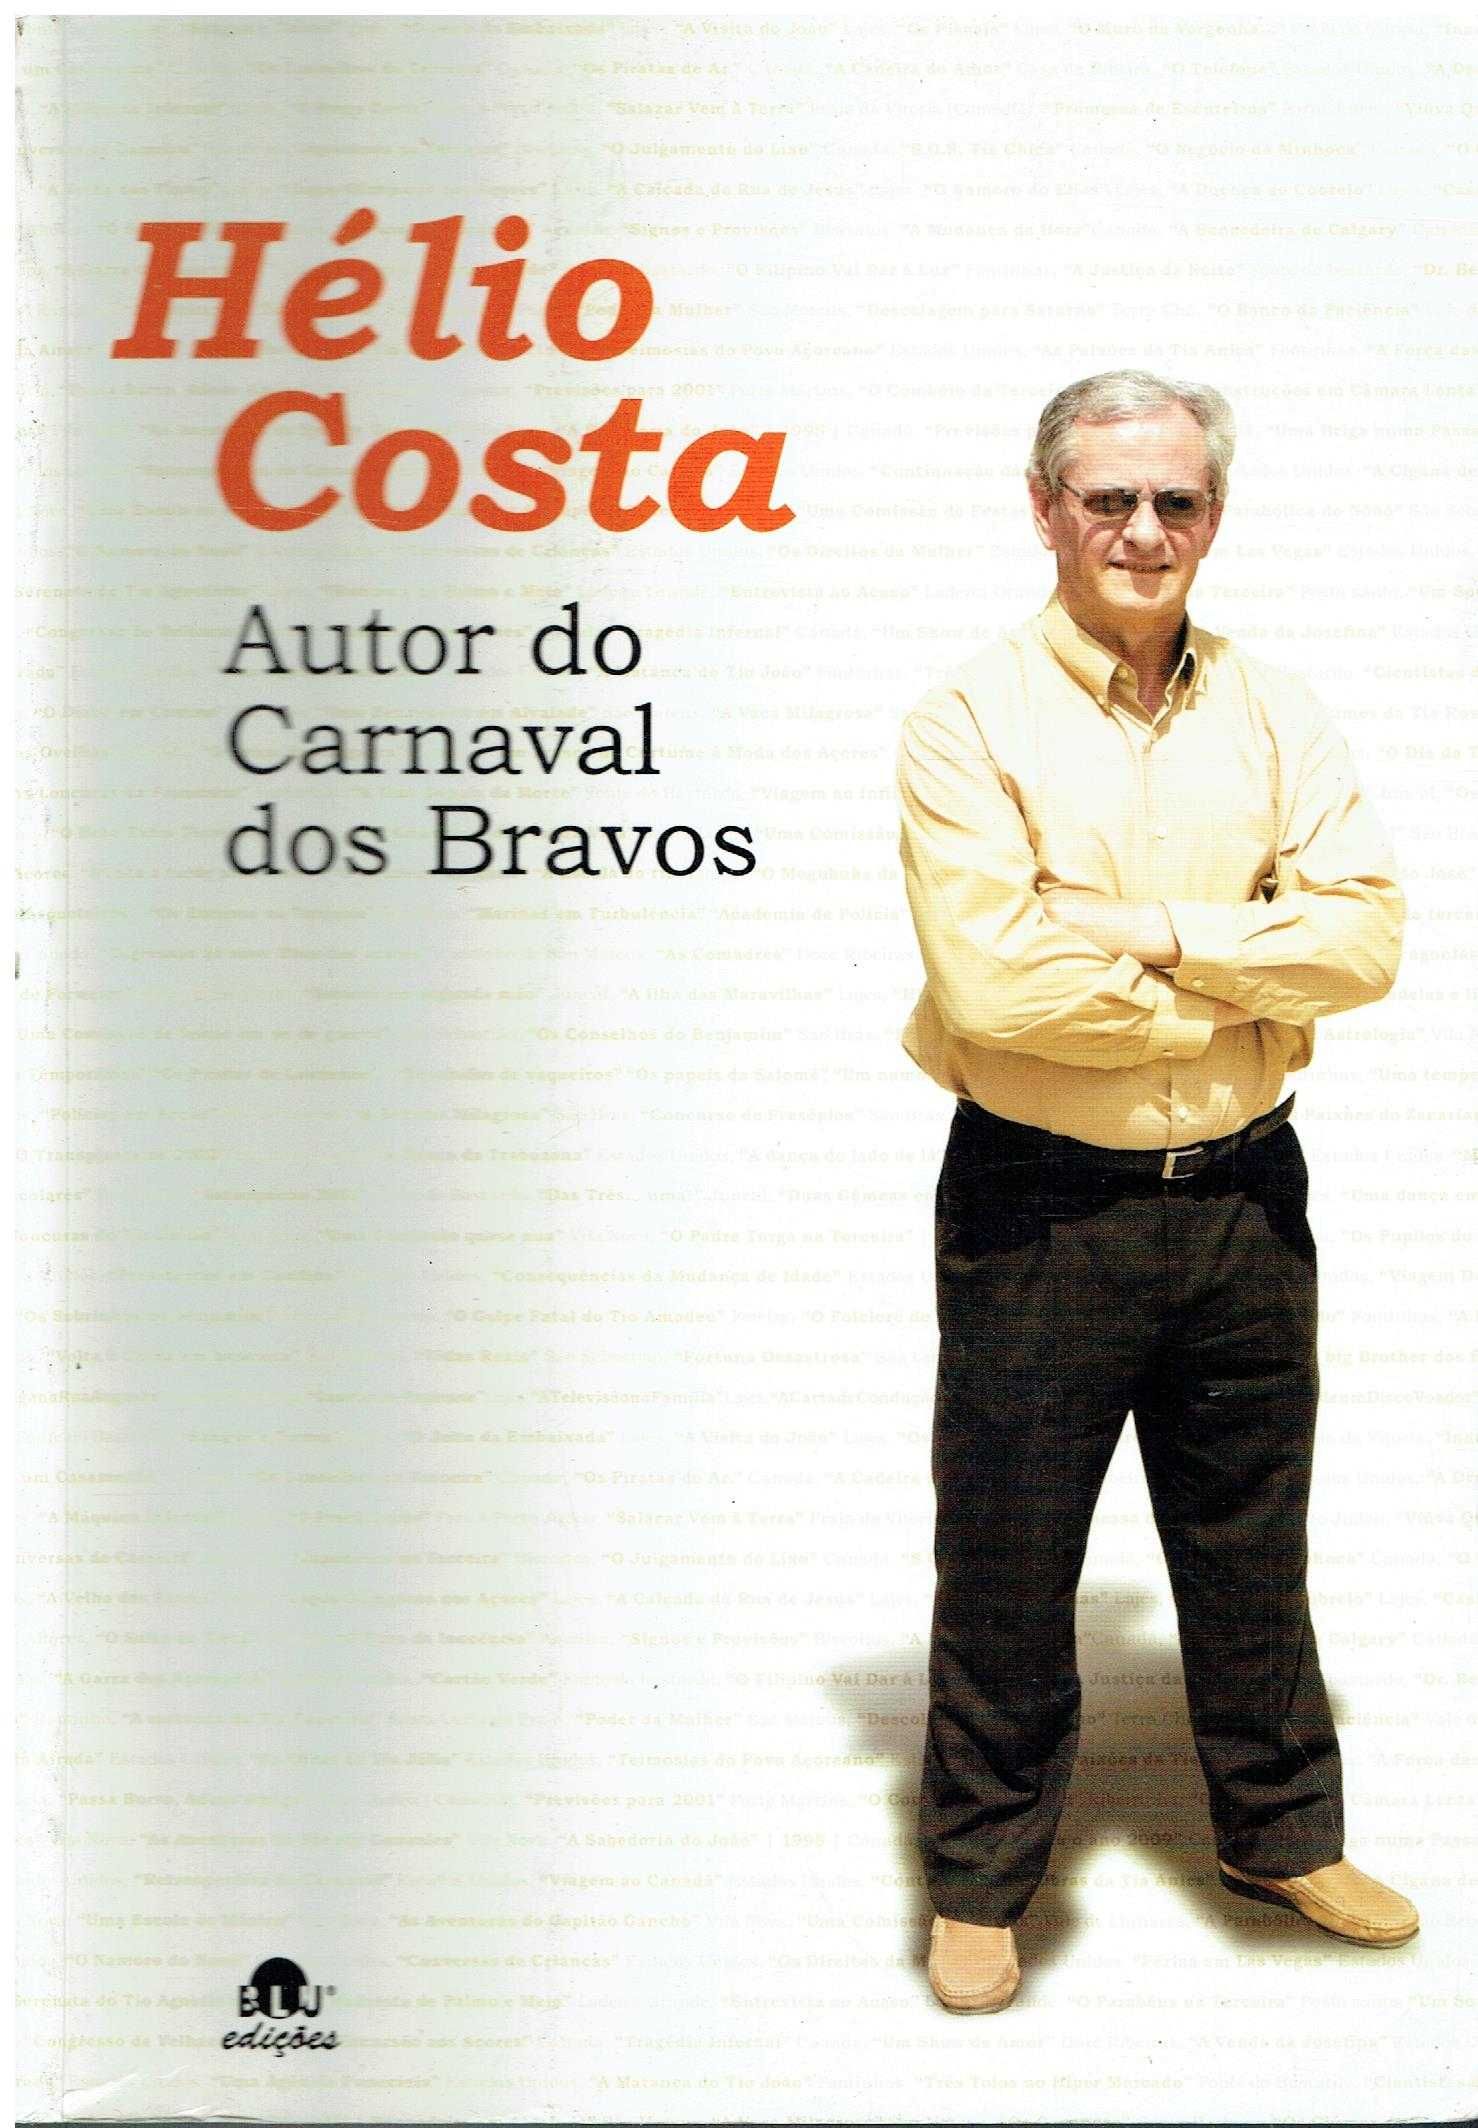 6976

Hélio Costa
Autor do Carnaval dos Bravos